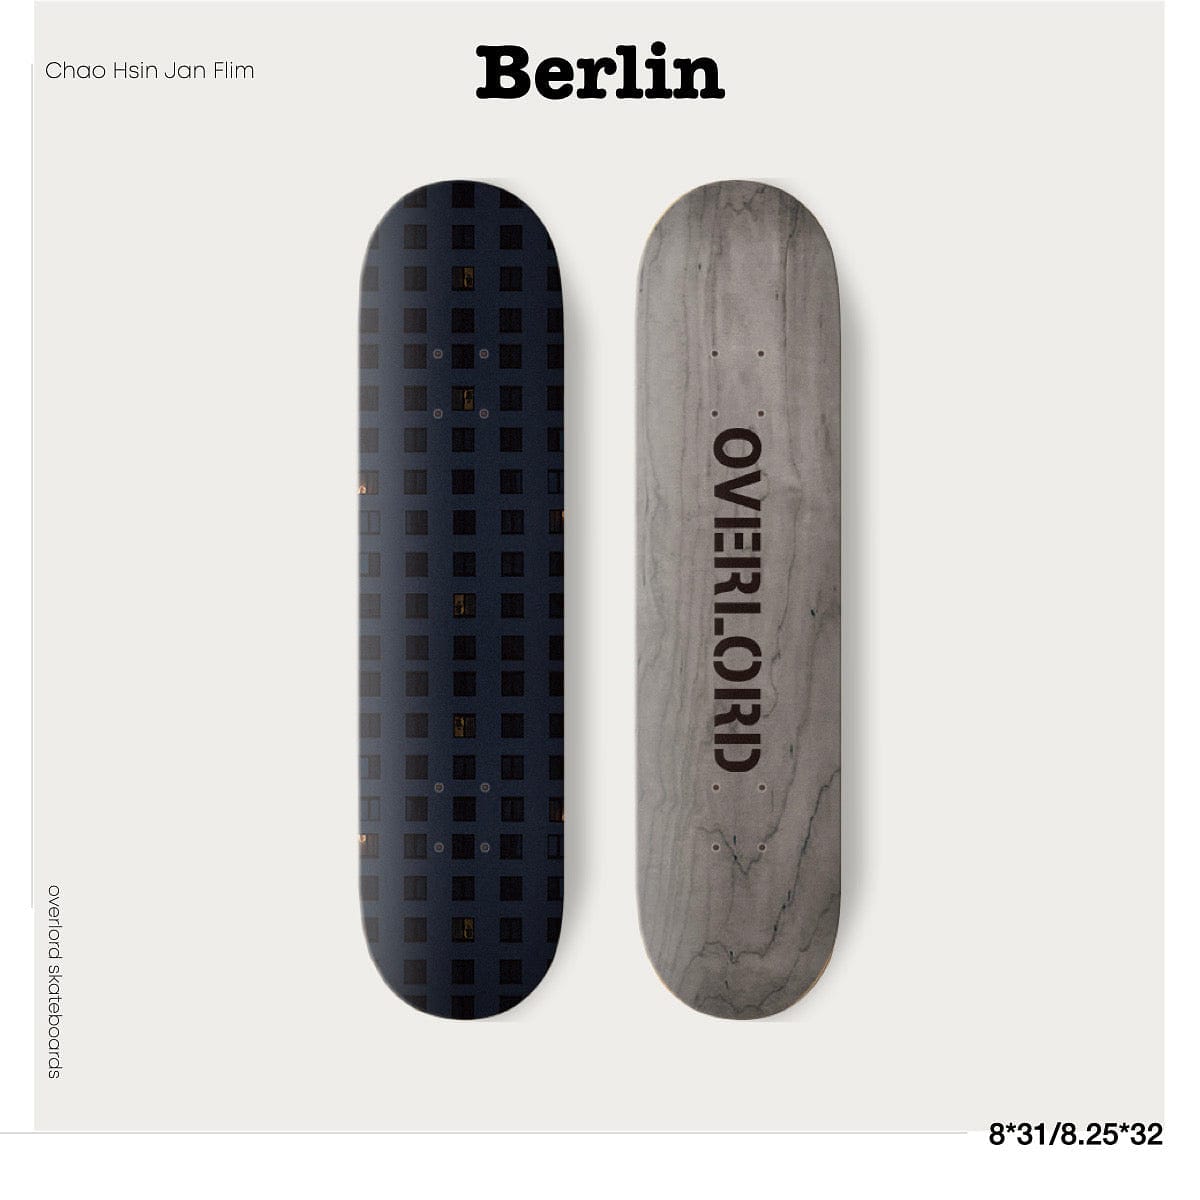 CITYGRAMMER BERLIN DECK 板身